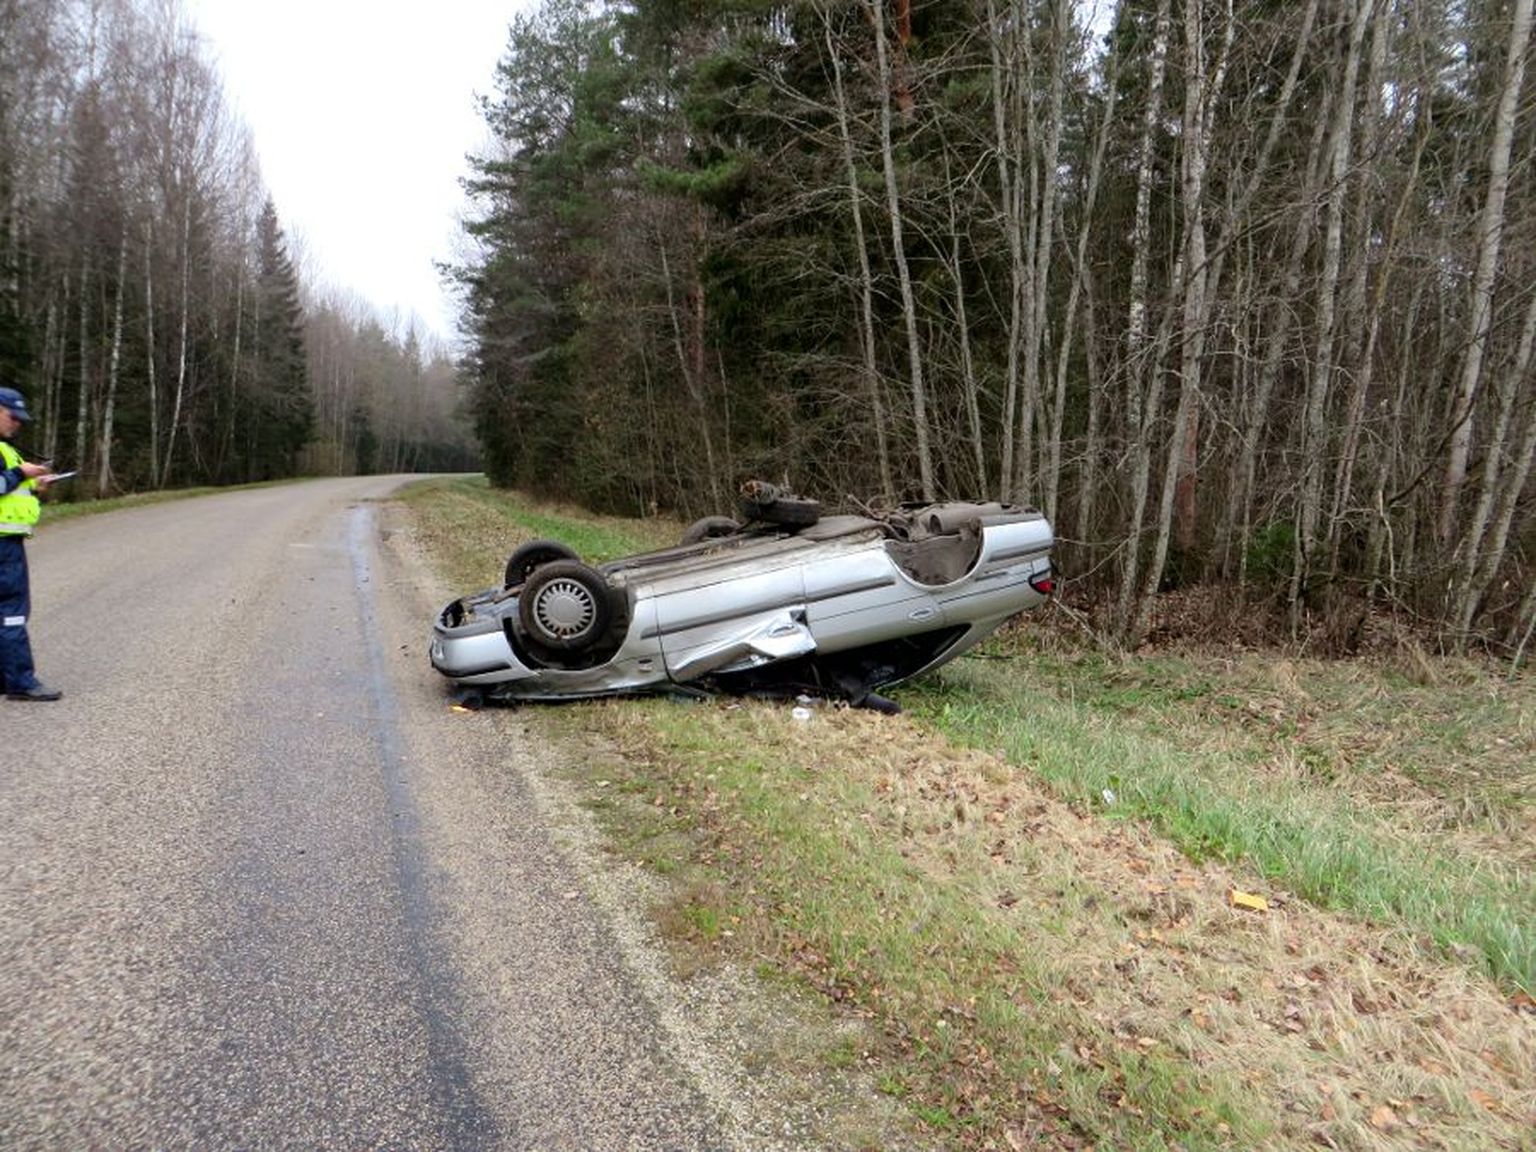 2014. aastal toimunud liiklusõnnetus Valgamaal Karula vallas Võru-Mõniste-Valga maantee 74,4 kilomeetril ehk peaaegu samas kohas, kus seekord samuti auto üle katuse rullus.